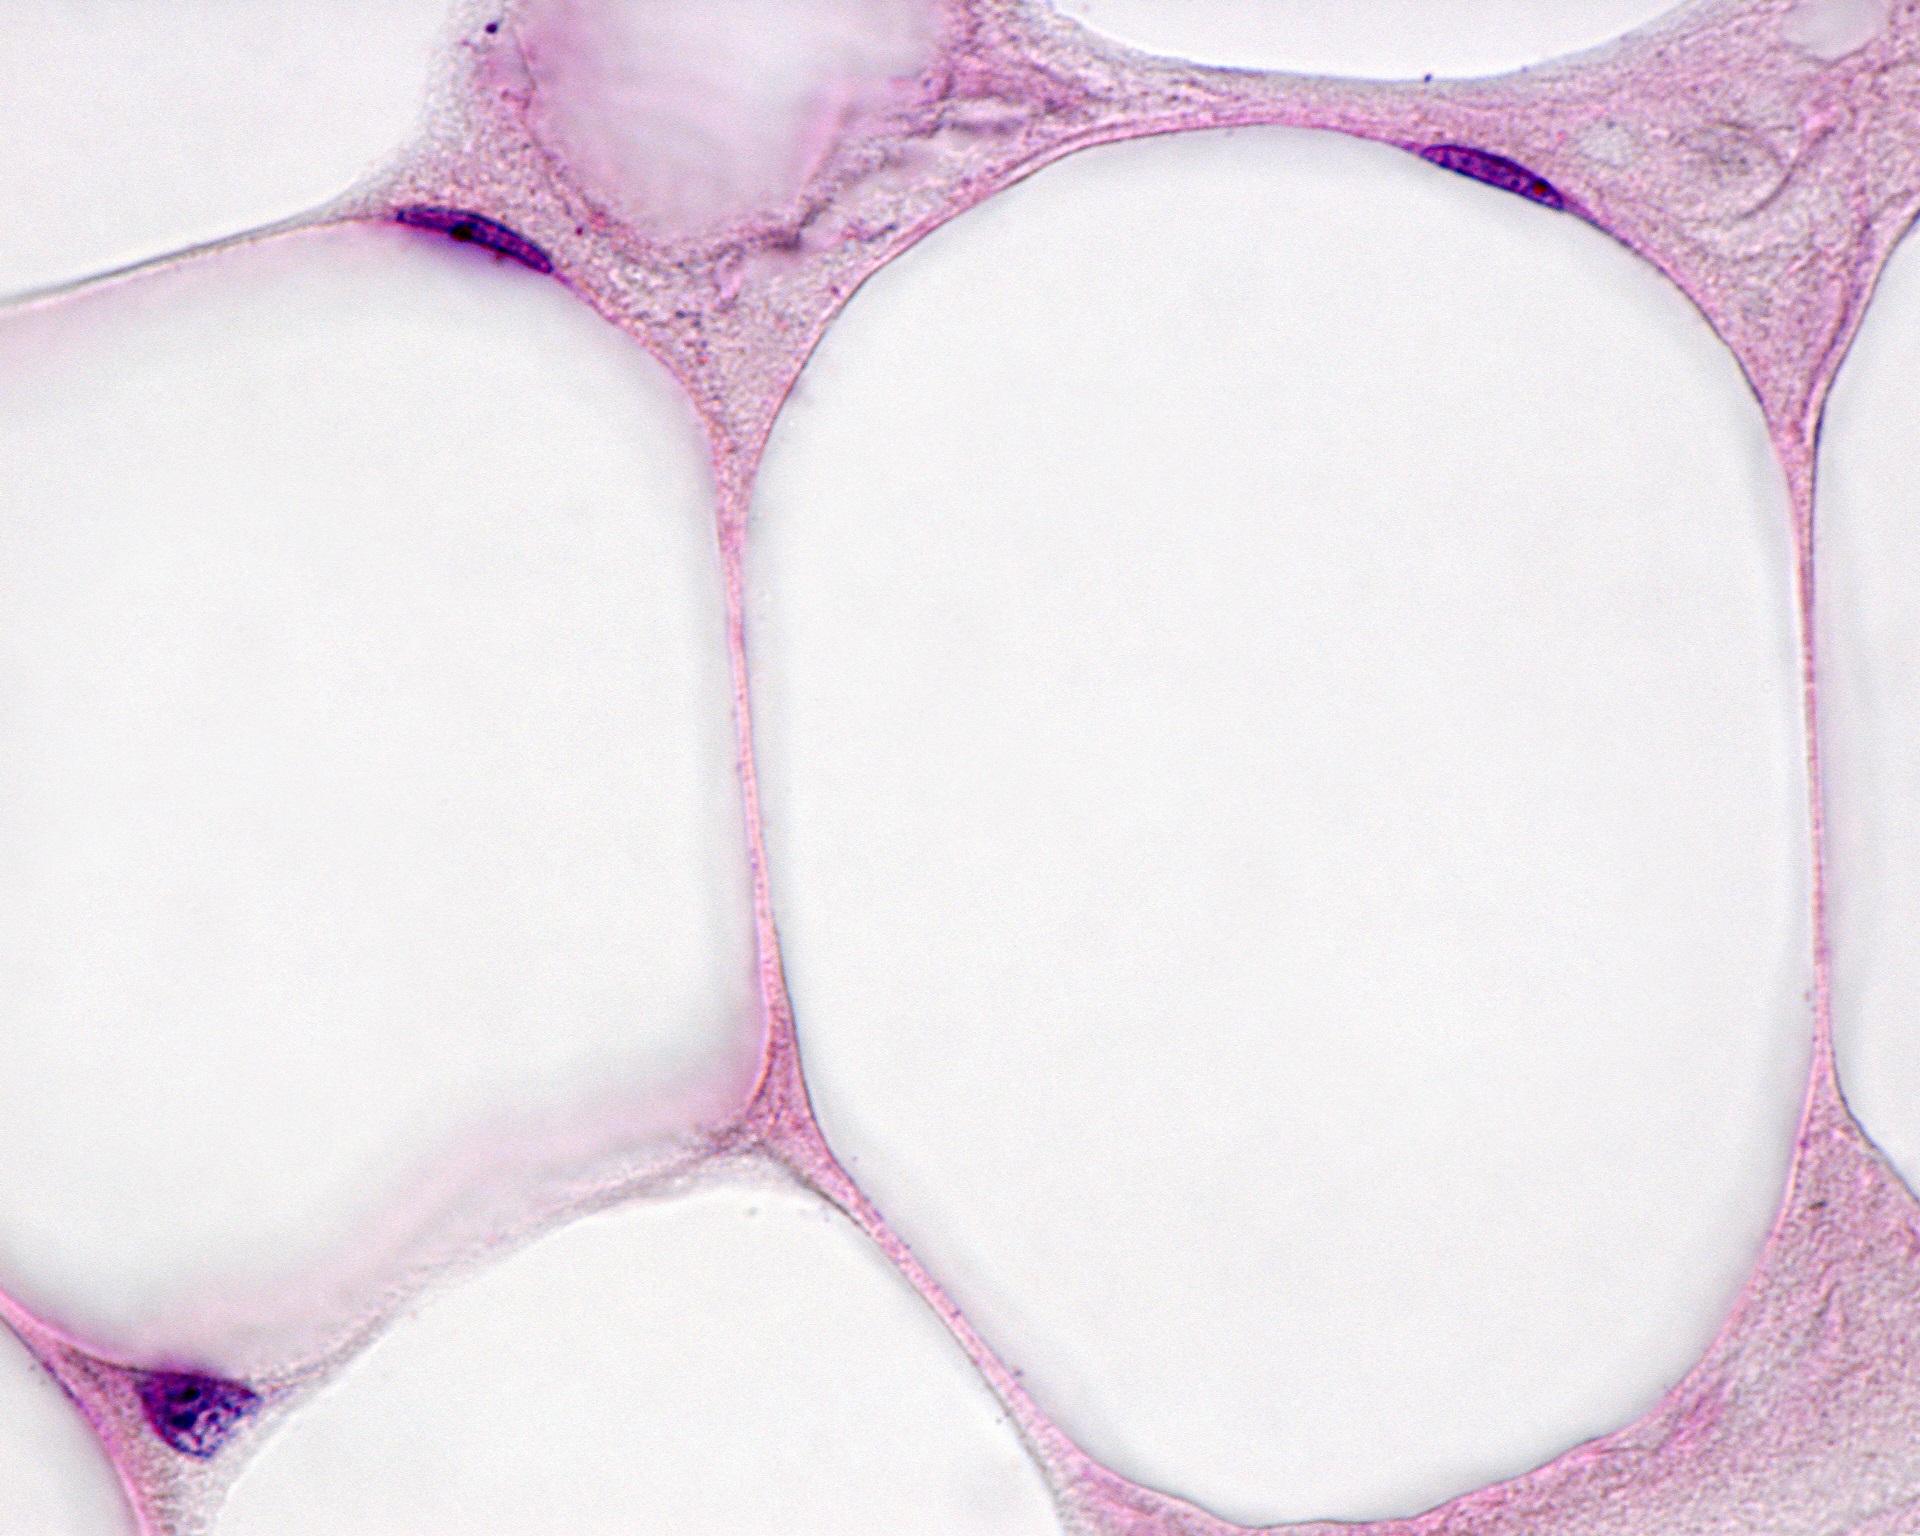 Dans les adipocytes du tissu adipeux blanc, le noyau est repoussé sur le bord à cause d'une grosse goutte de graisse. © Jose Luis Calvo, Shutterstock